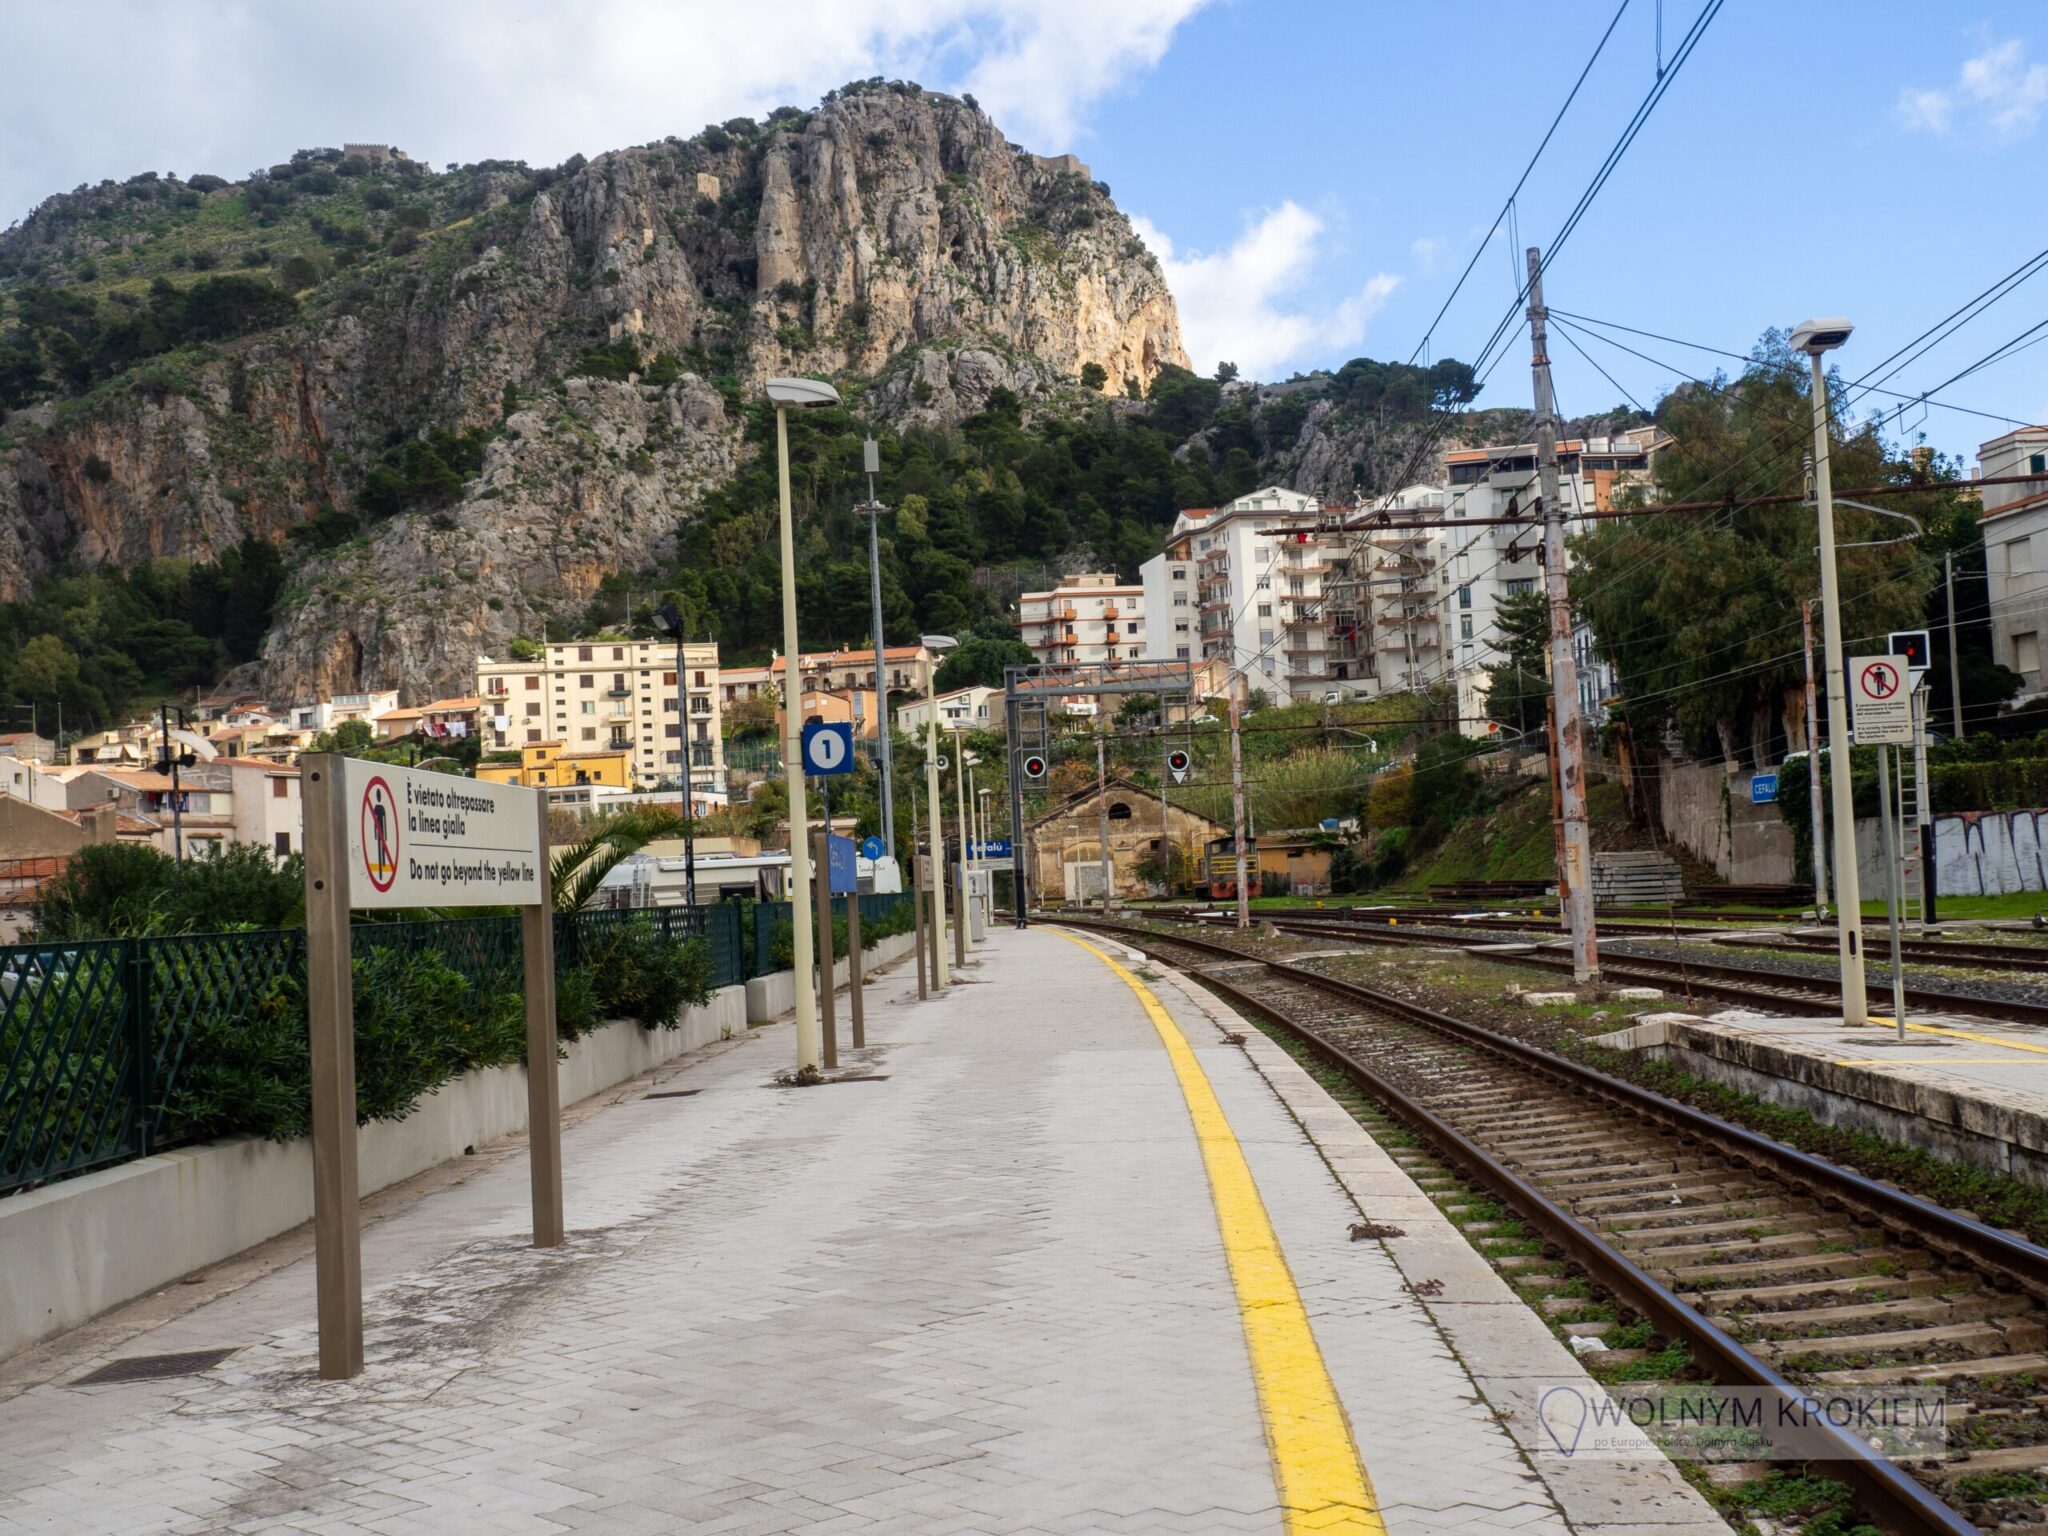 Cefalu - piękne sycylijskie miasteczko godzinę drogi od Palermo